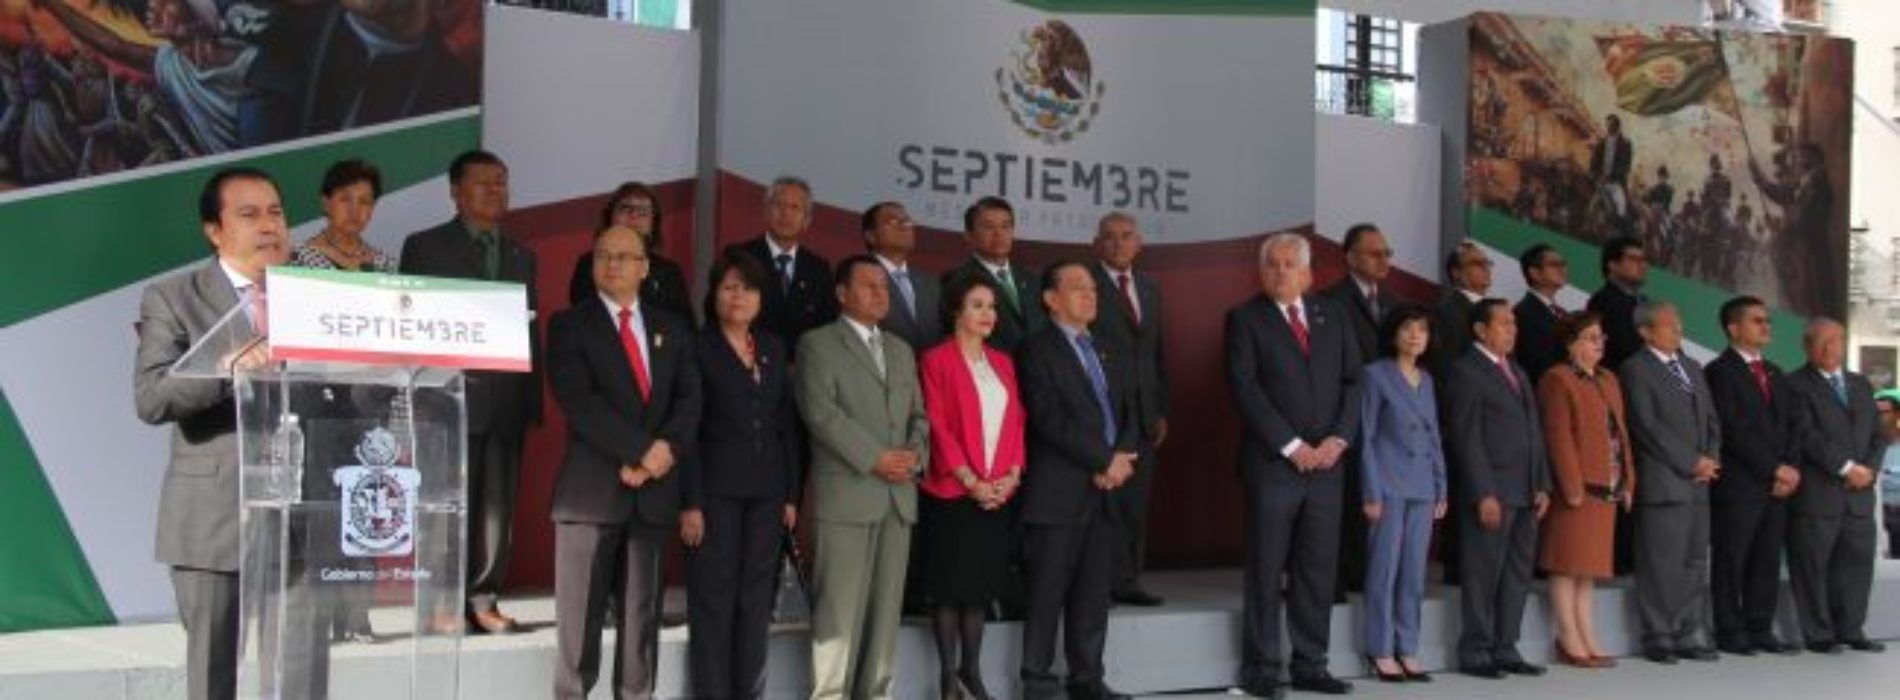 El poder judicial de Oaxaca realiza izamiento de
bandera